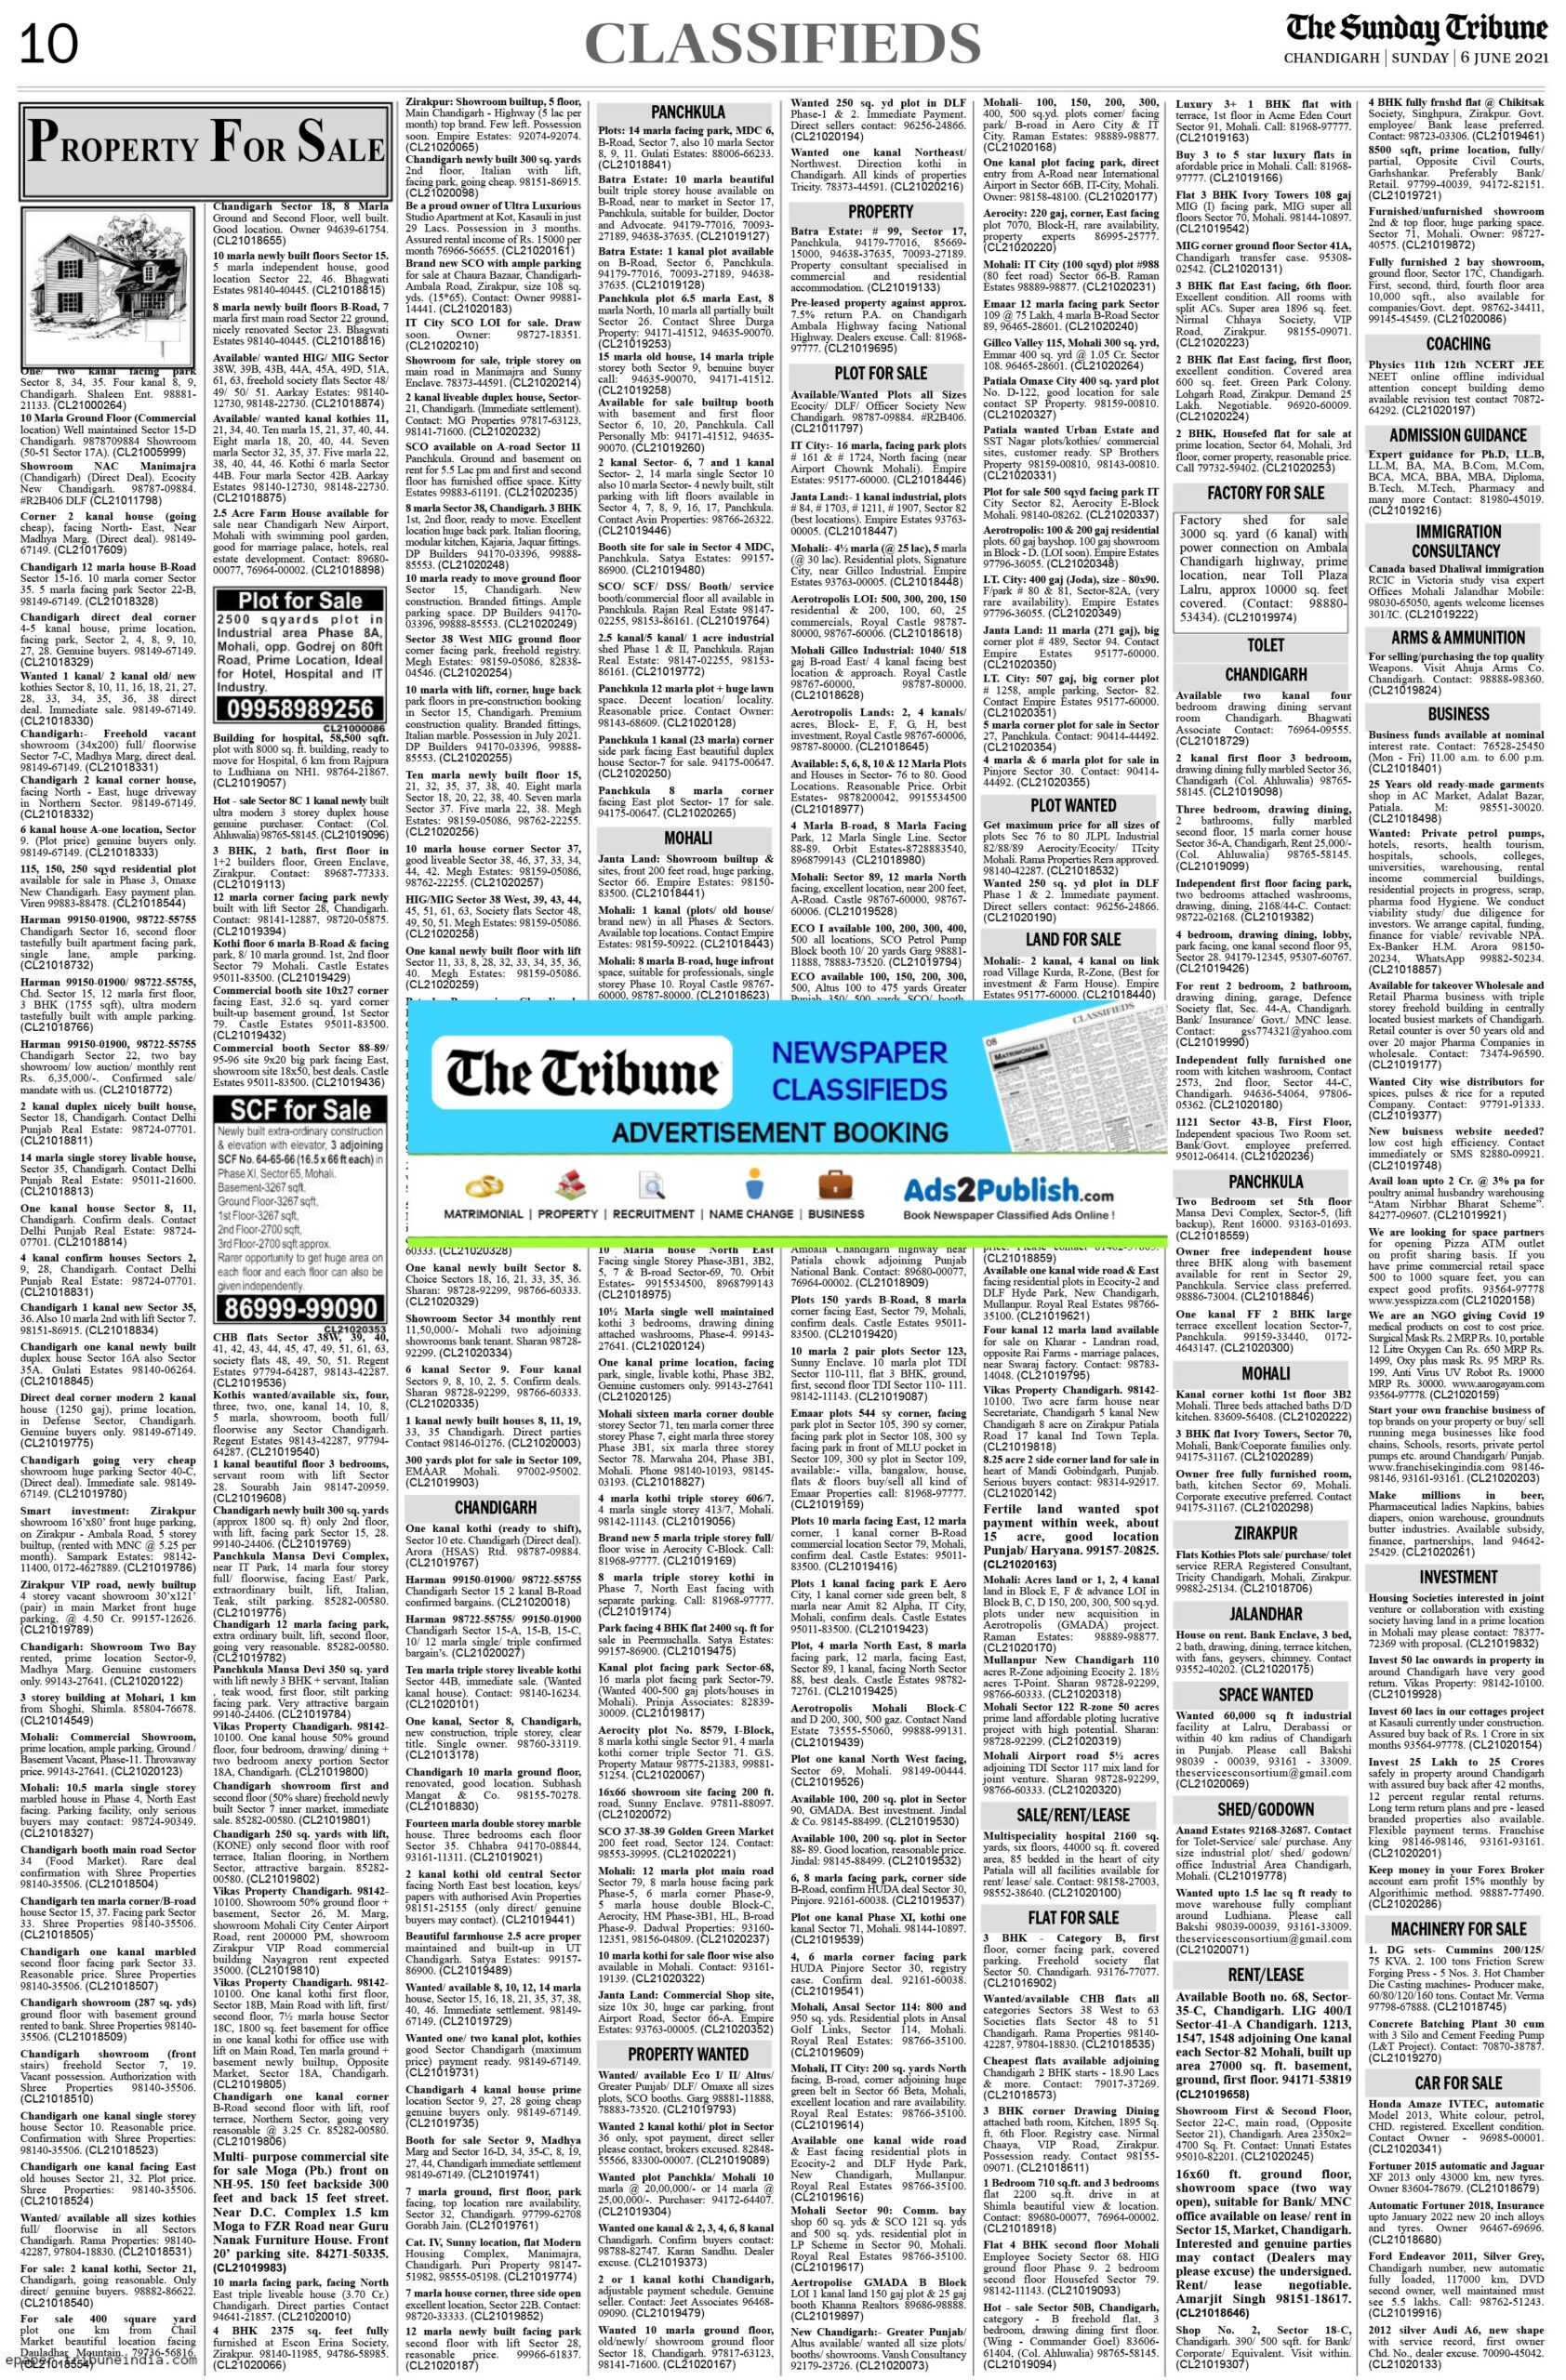 The Tribune, Chandigarh, India - Business